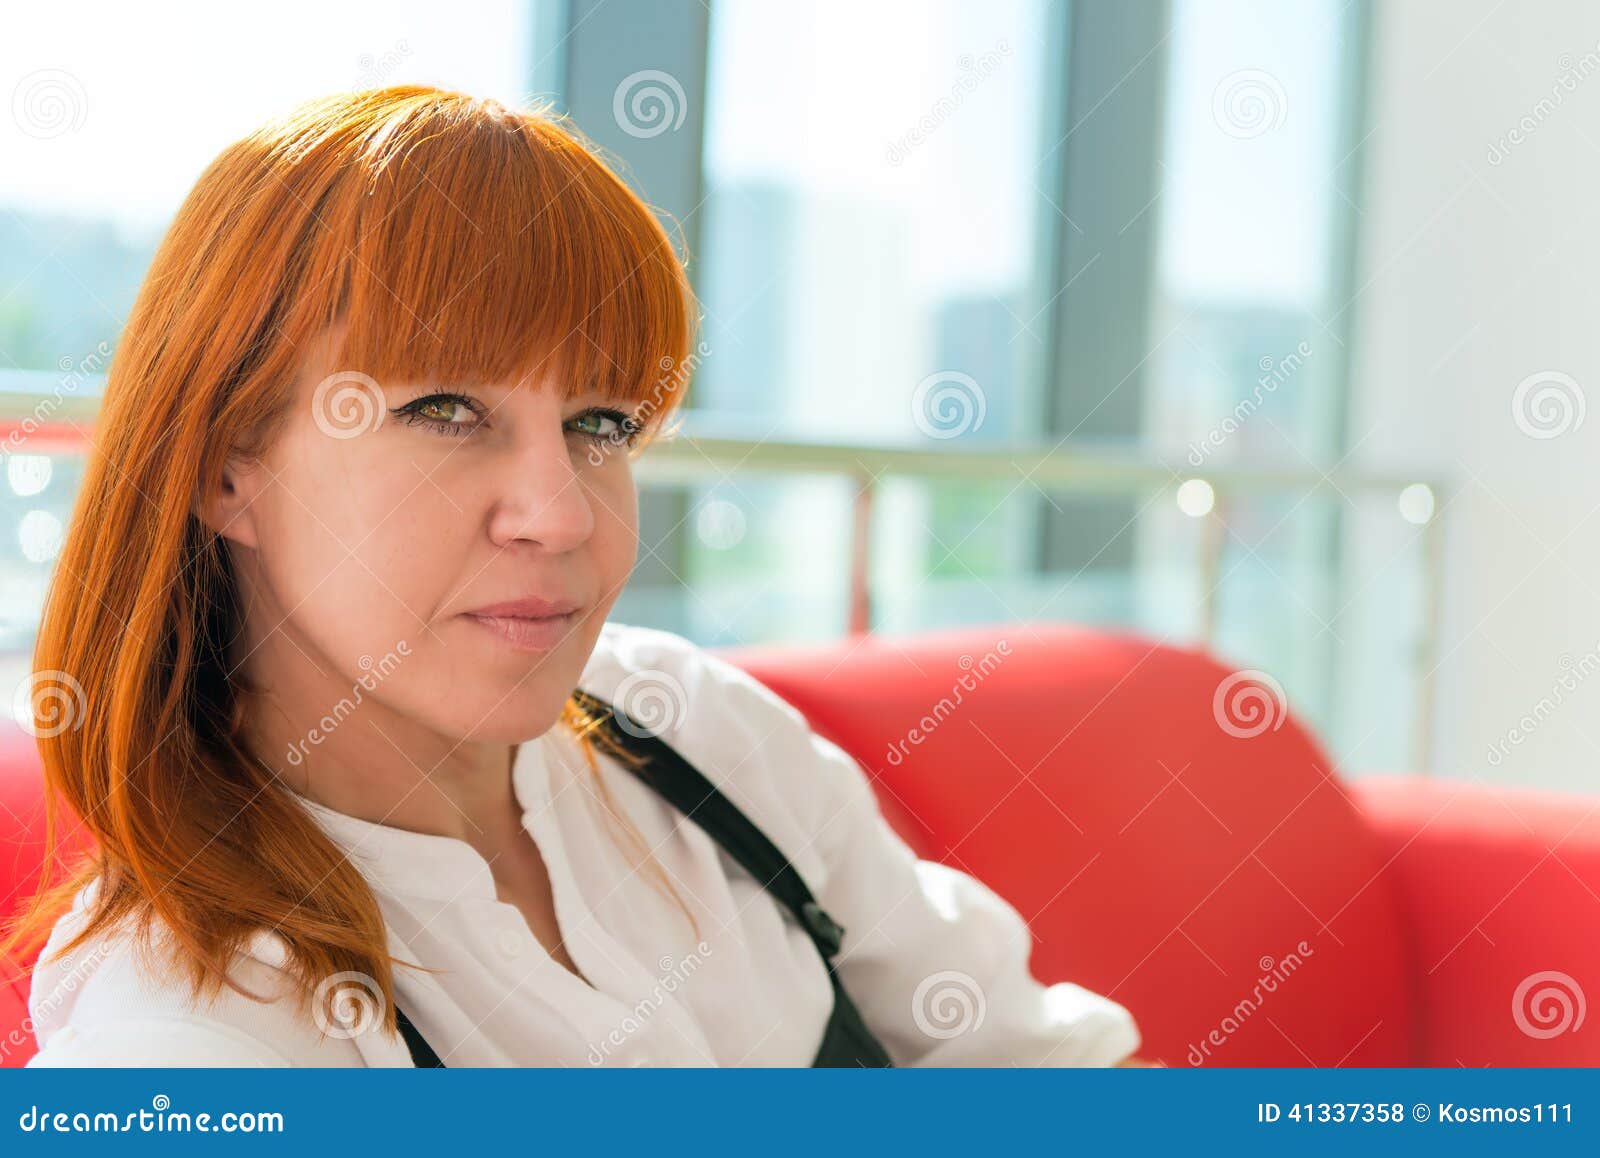 leer red-haired girl